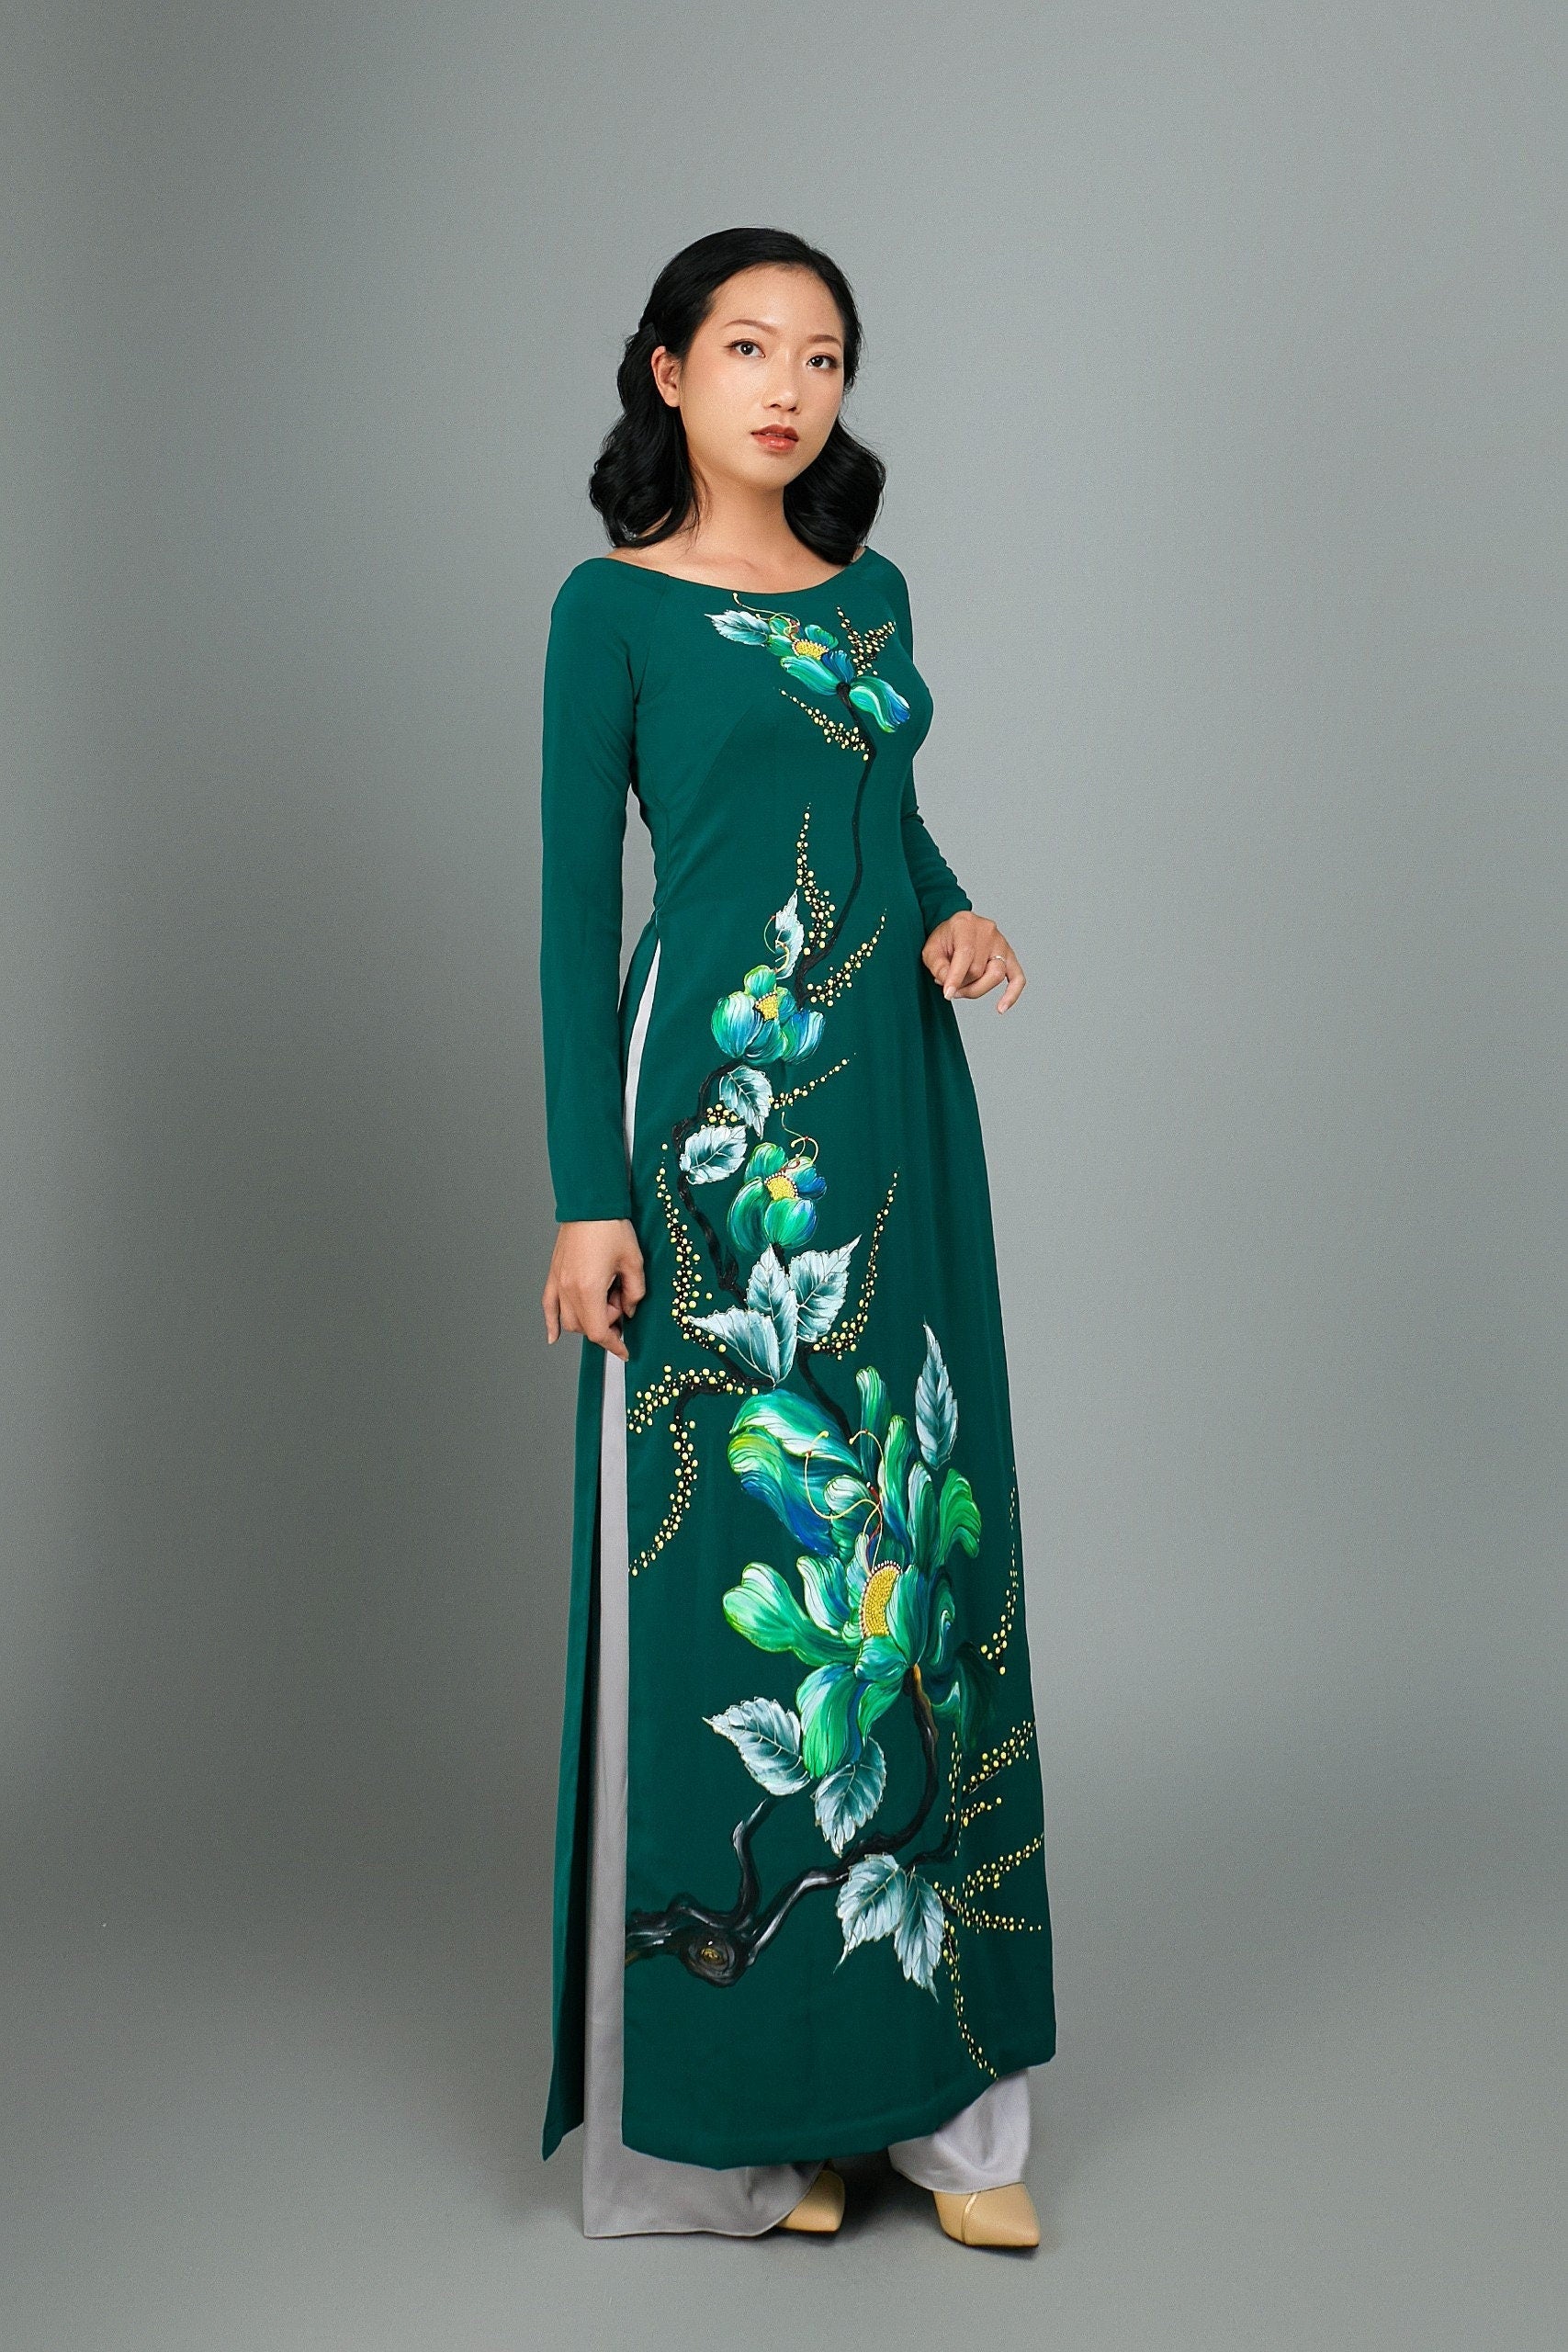 Ao dai; custom Vietnamese long dresses by mark&vy - Mark&Vy Ao Dai